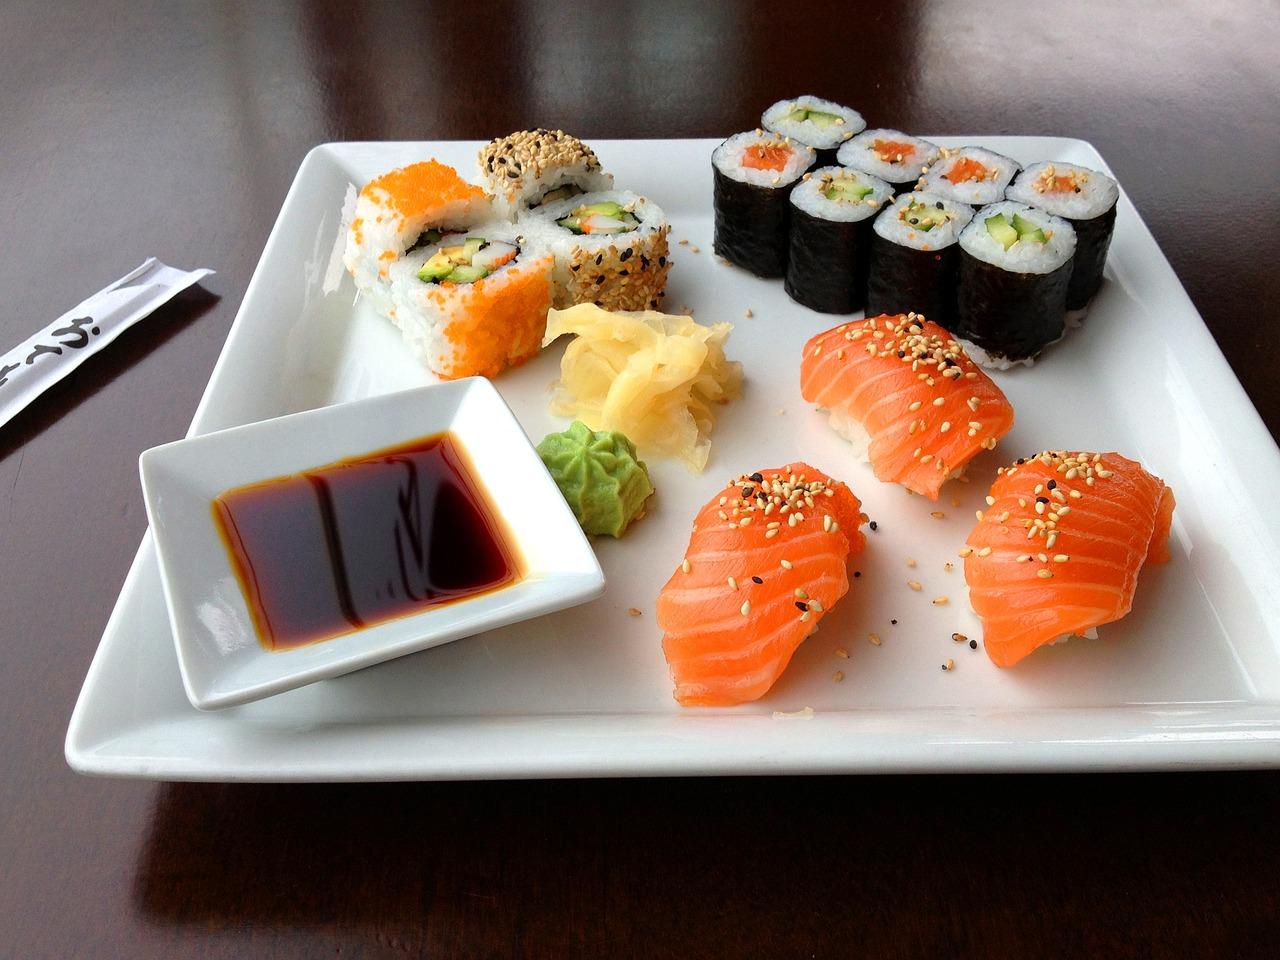 Plato con diferentes sabores de sushis con salsa wasabi donde al lado del plato aparecen los palillos para coger el sushi